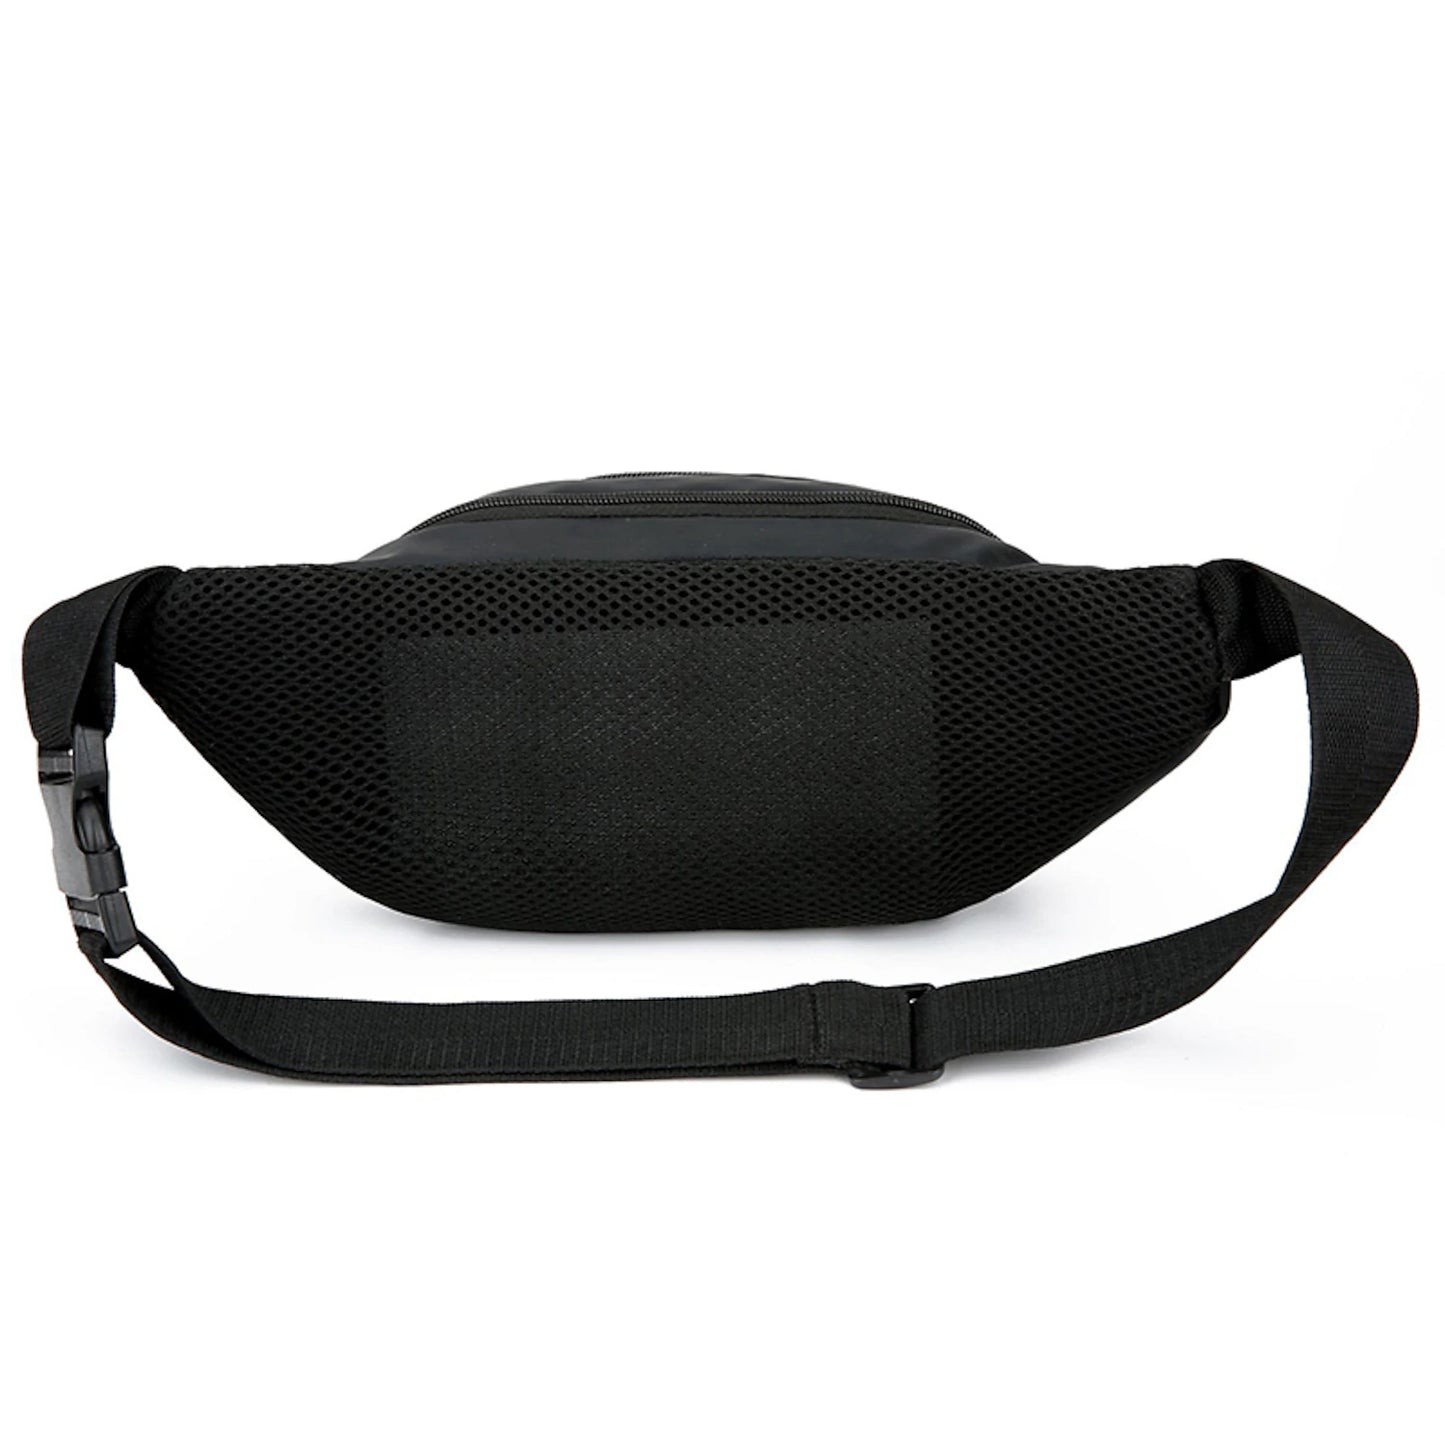 Men's Crossbody Bag Shoulder Bag Fanny Pack Chest Bag Hobo Bag Nylon Outdoor Holiday Zipper Adjustable Large Capacity Lightweight Solid